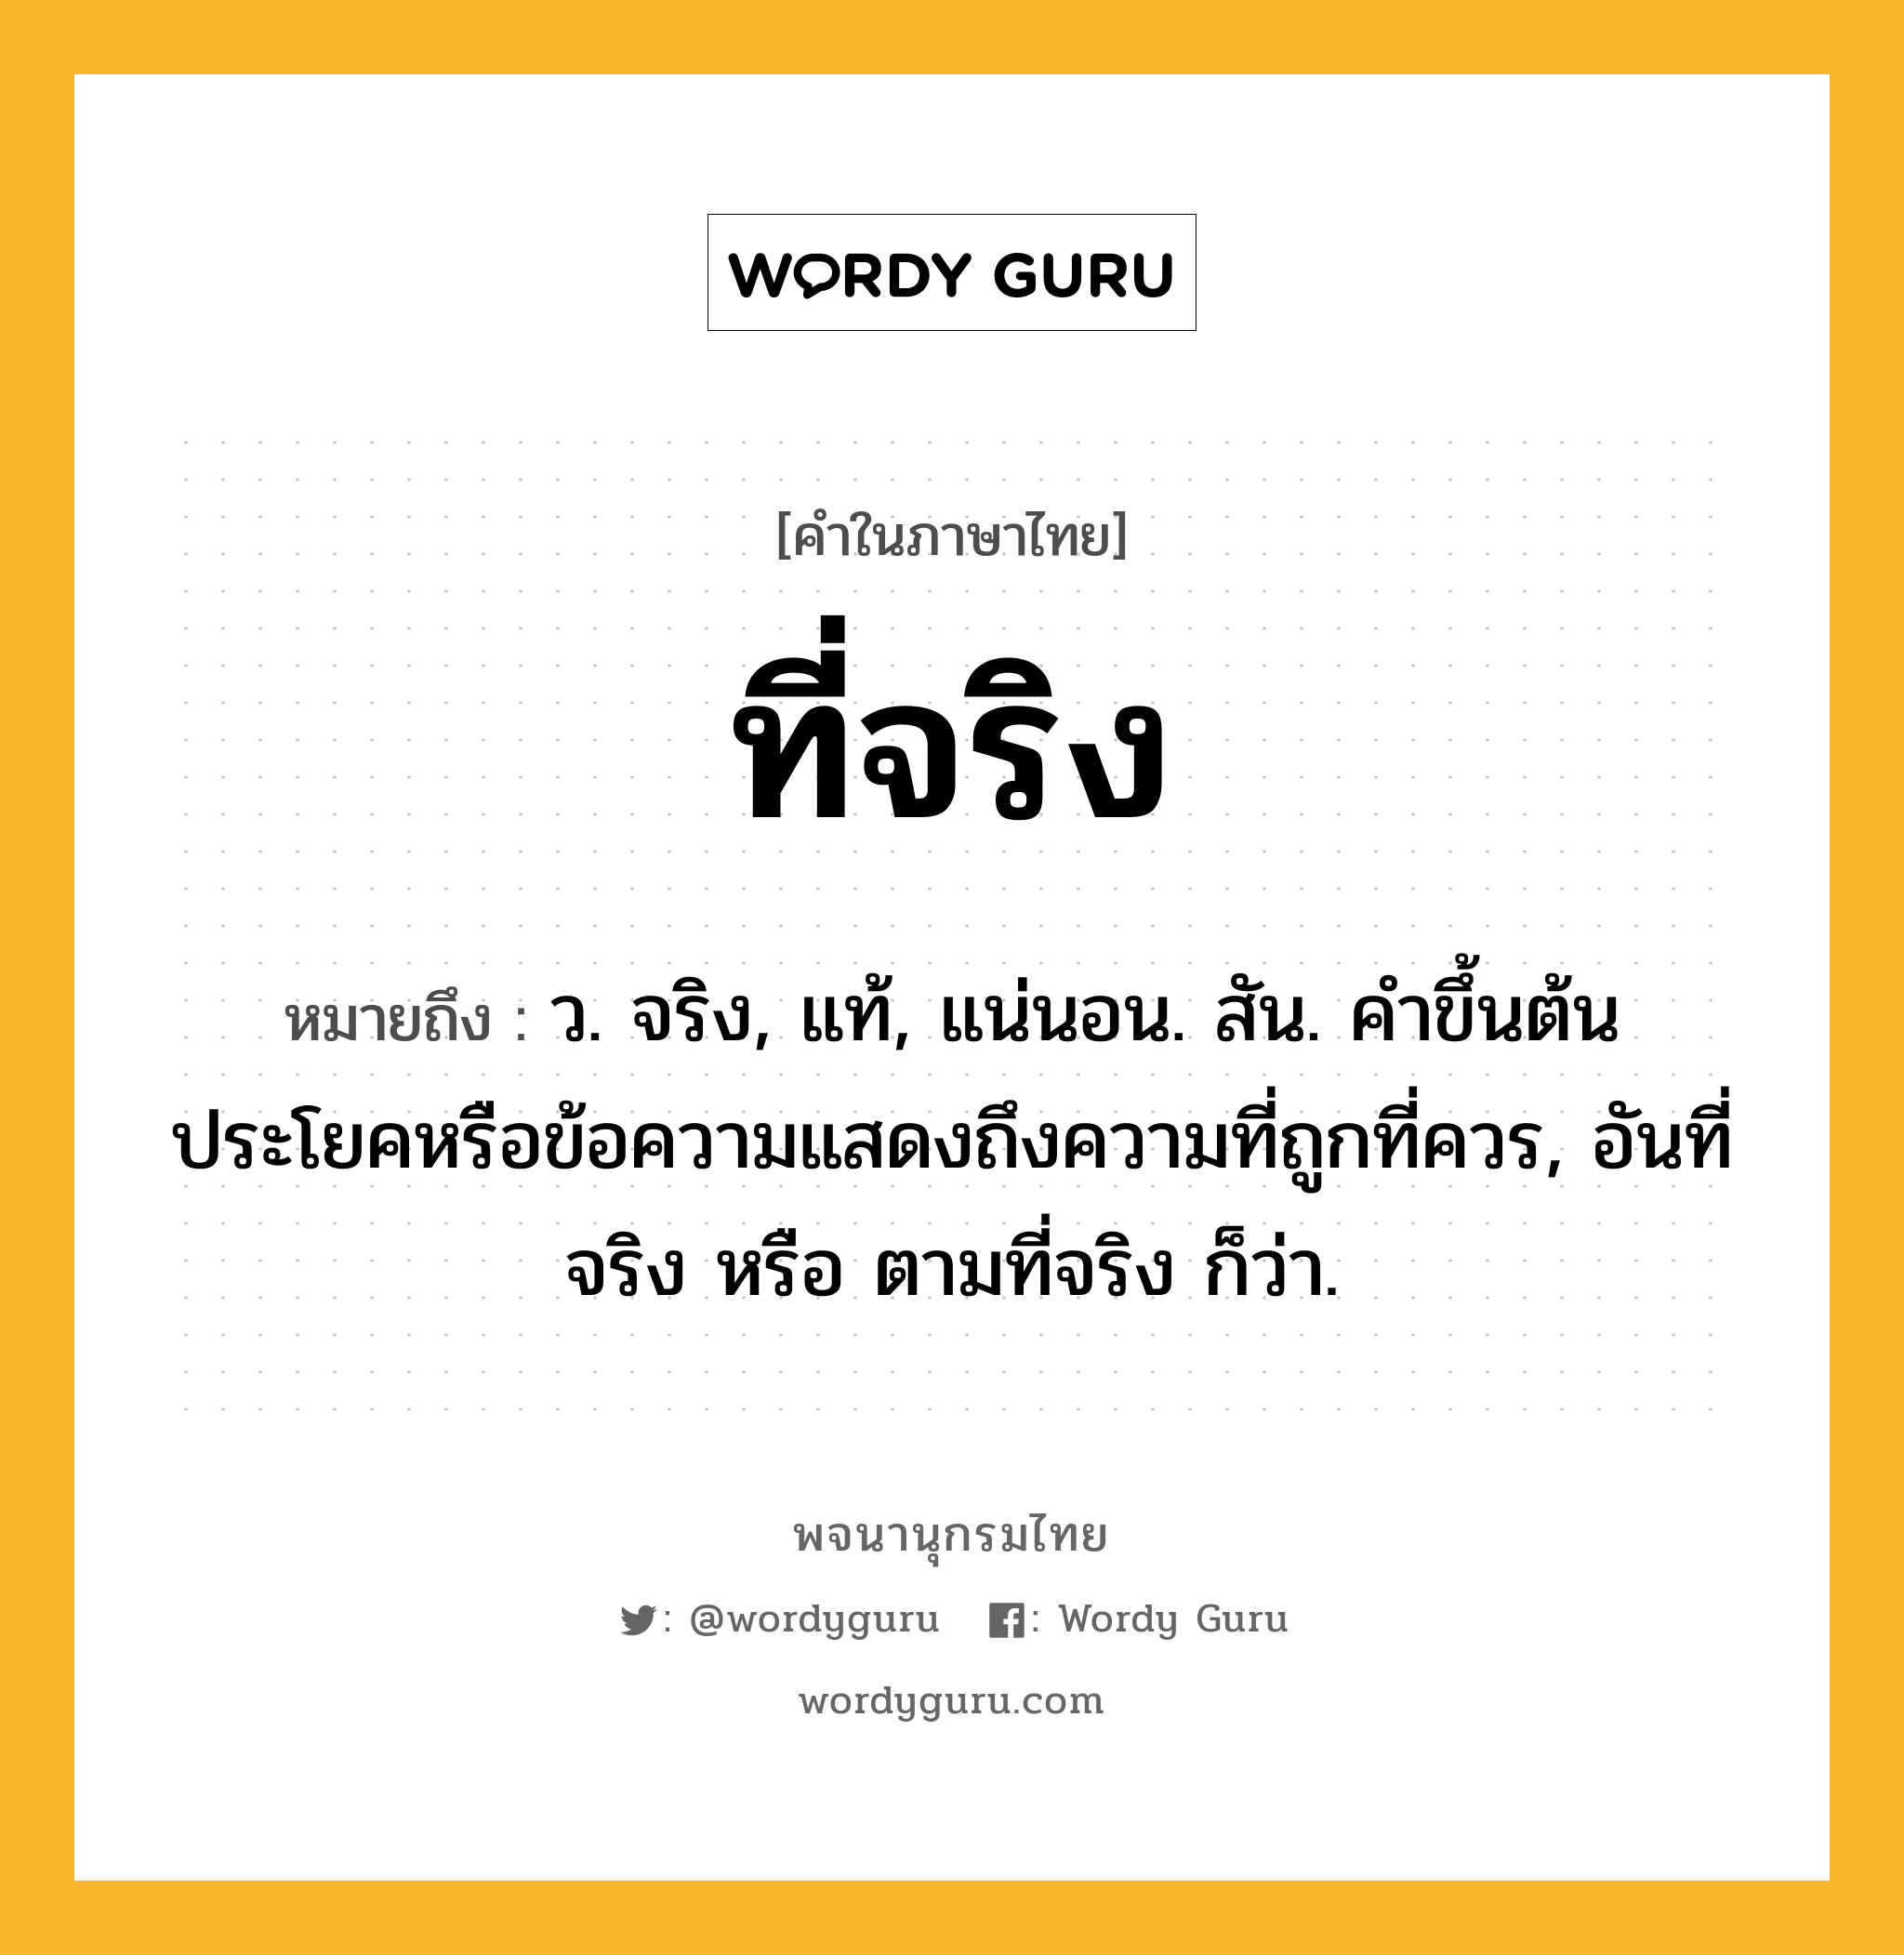 ที่จริง ความหมาย หมายถึงอะไร?, คำในภาษาไทย ที่จริง หมายถึง ว. จริง, แท้, แน่นอน. สัน. คําขึ้นต้นประโยคหรือข้อความแสดงถึงความที่ถูกที่ควร, อันที่จริง หรือ ตามที่จริง ก็ว่า.